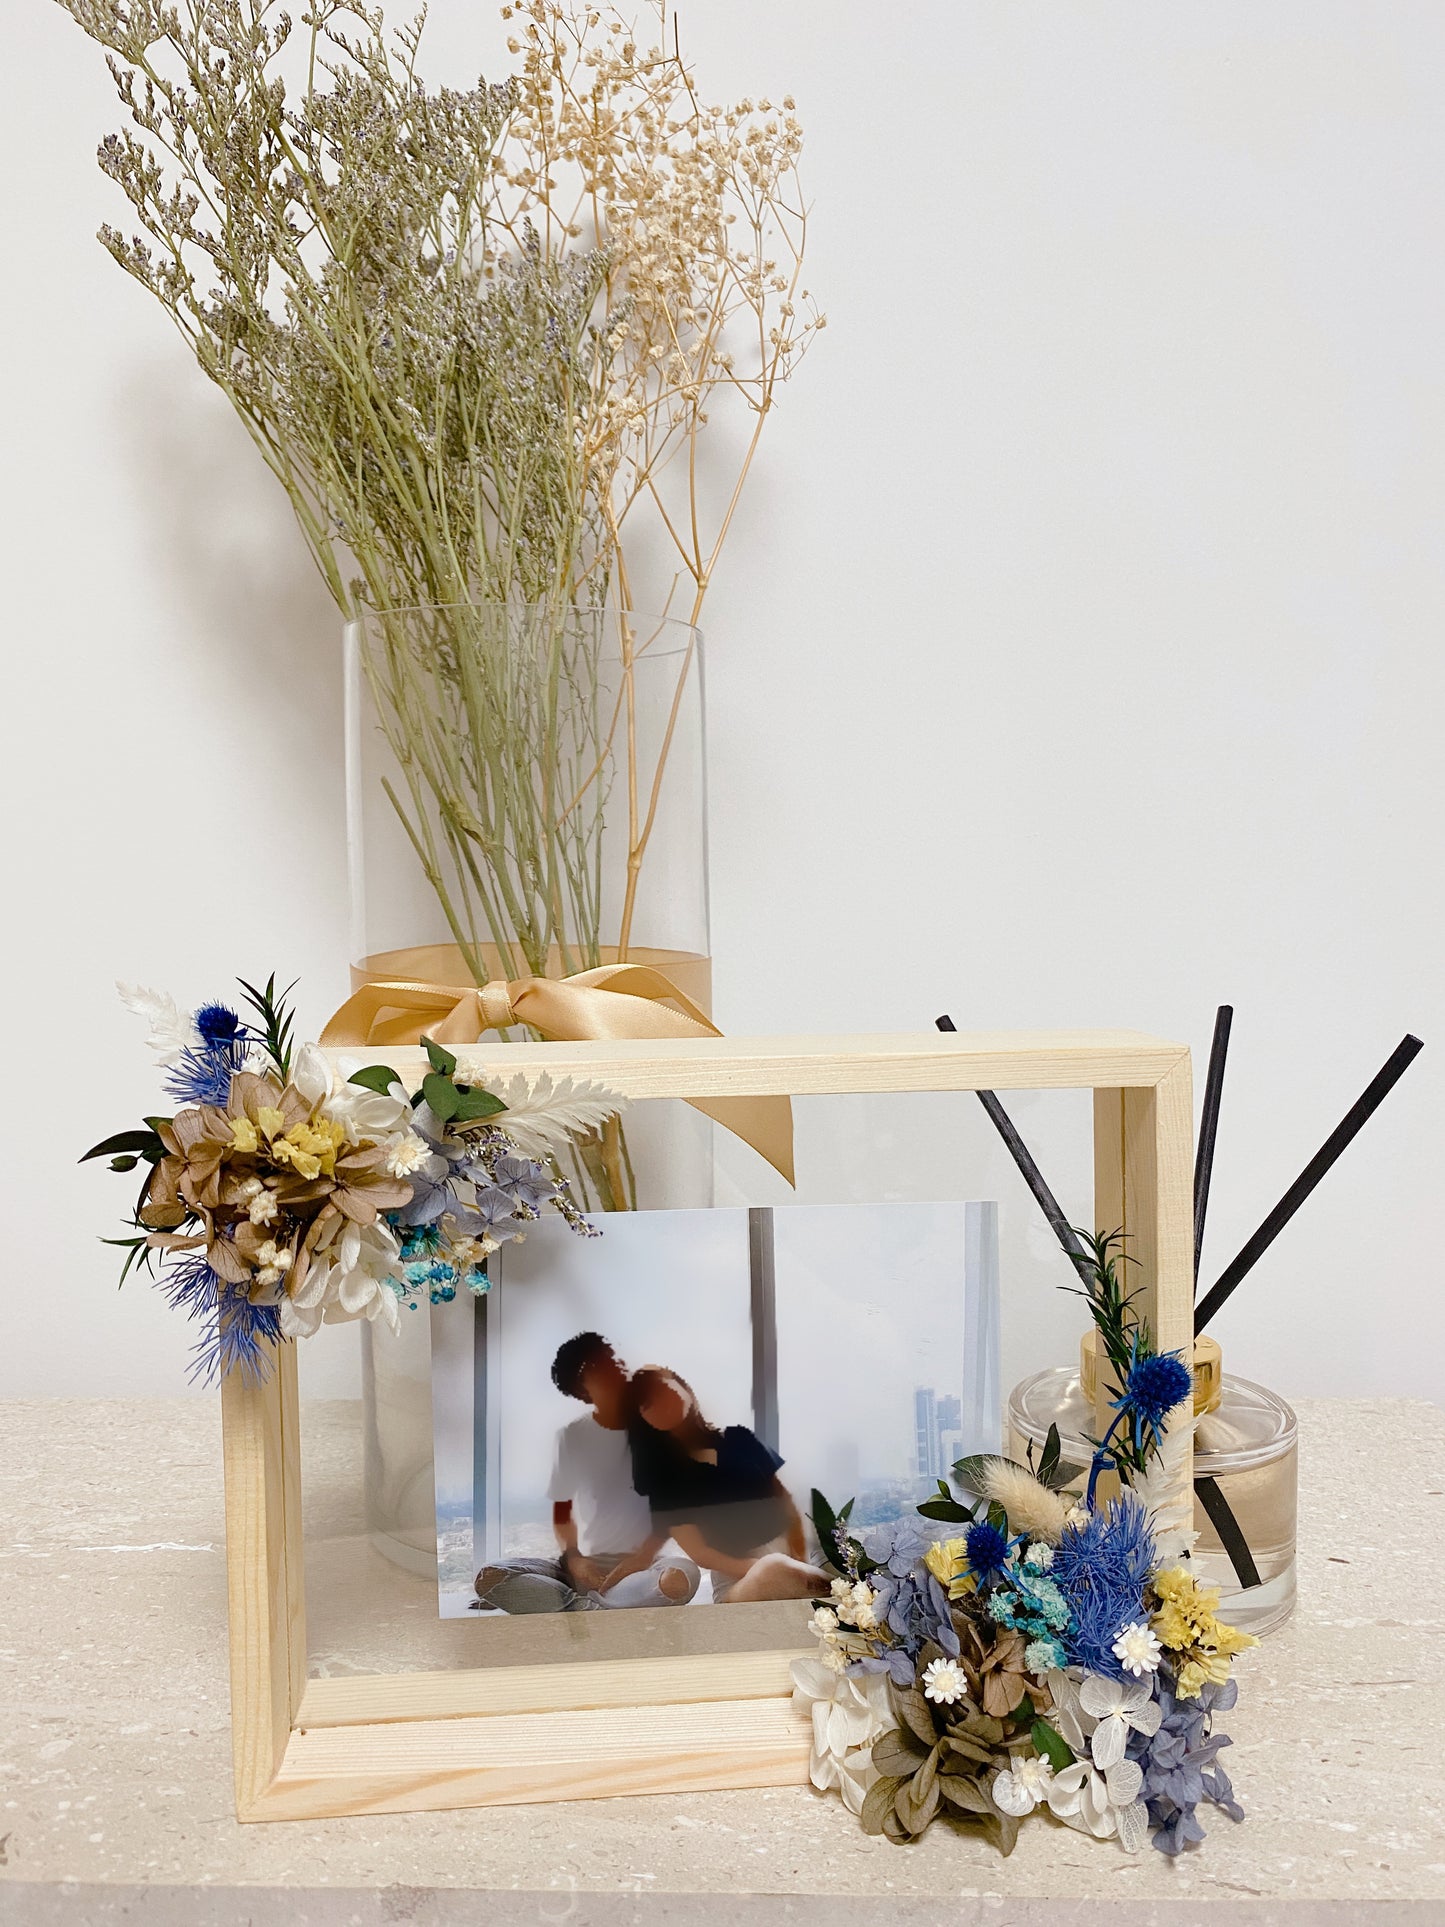 Floral Photo Frame - Let us design for you!